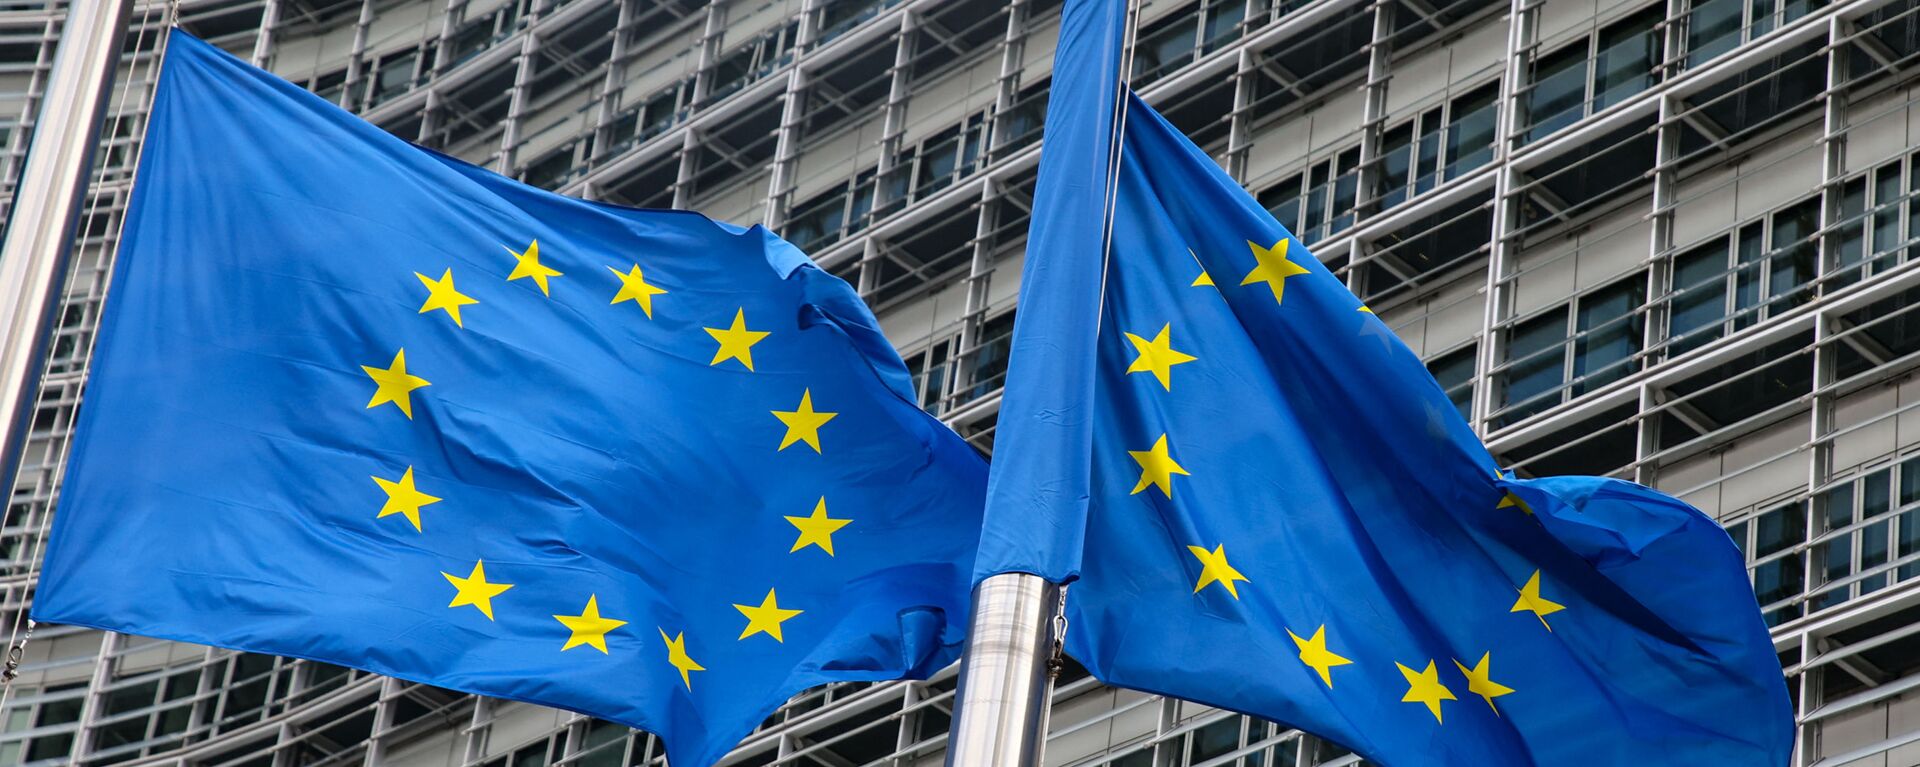 Флаги Европейского союза у штаб-квартиры Европейской комиссии в Брюсселе  - Sputnik Lietuva, 1920, 29.09.2021